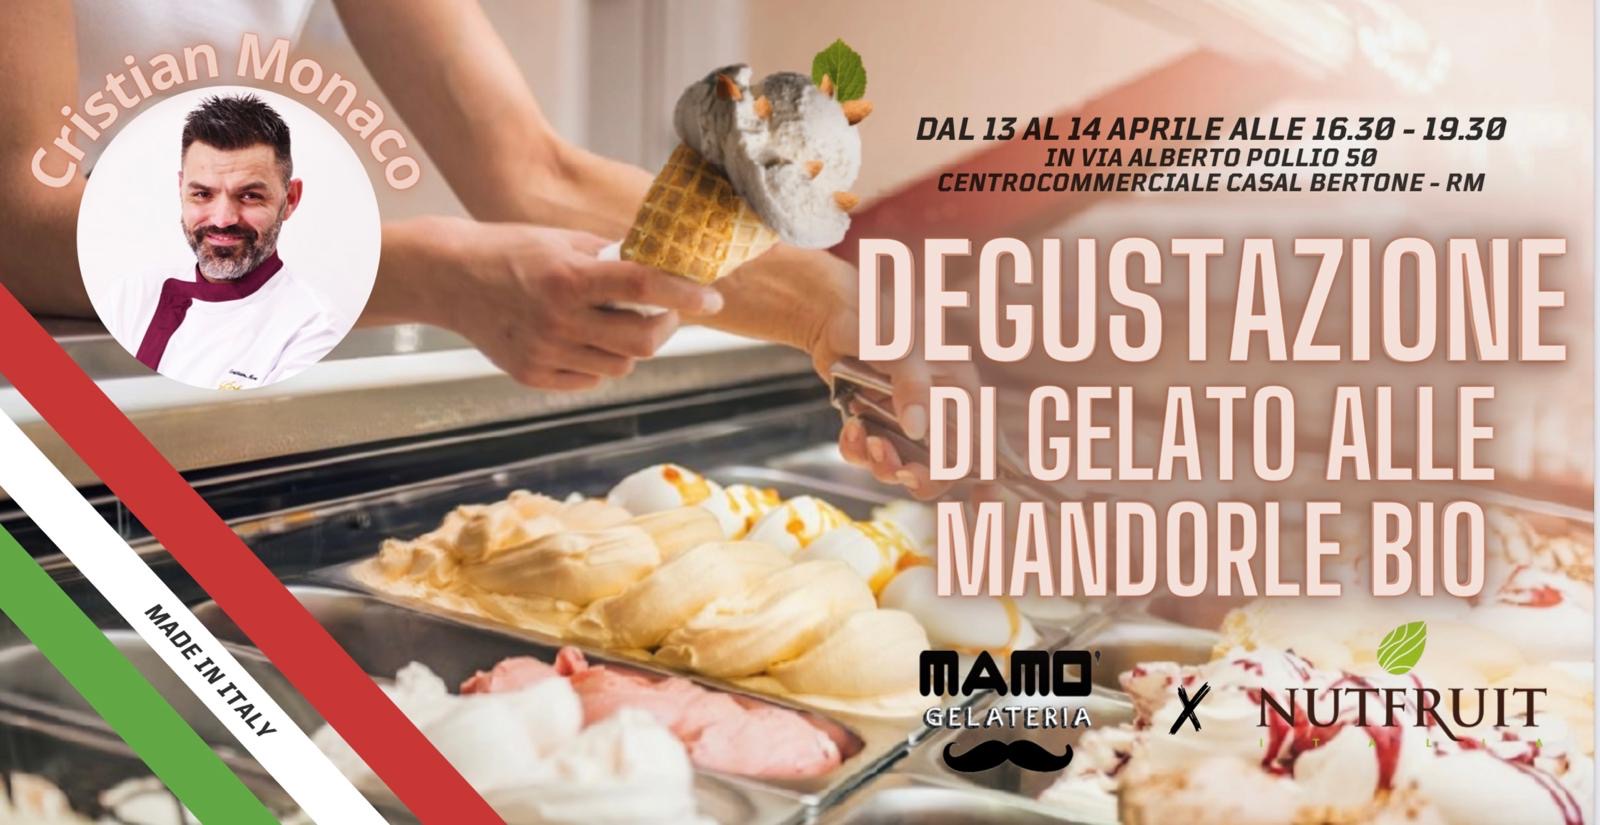 https://www.agenziaeventi.org/immagini_news/4120/roma-degustazione-di-gelato-e-mandorle-a-casal-bertone-13-e-14-aprile-dalle-16-30-4120.jpg